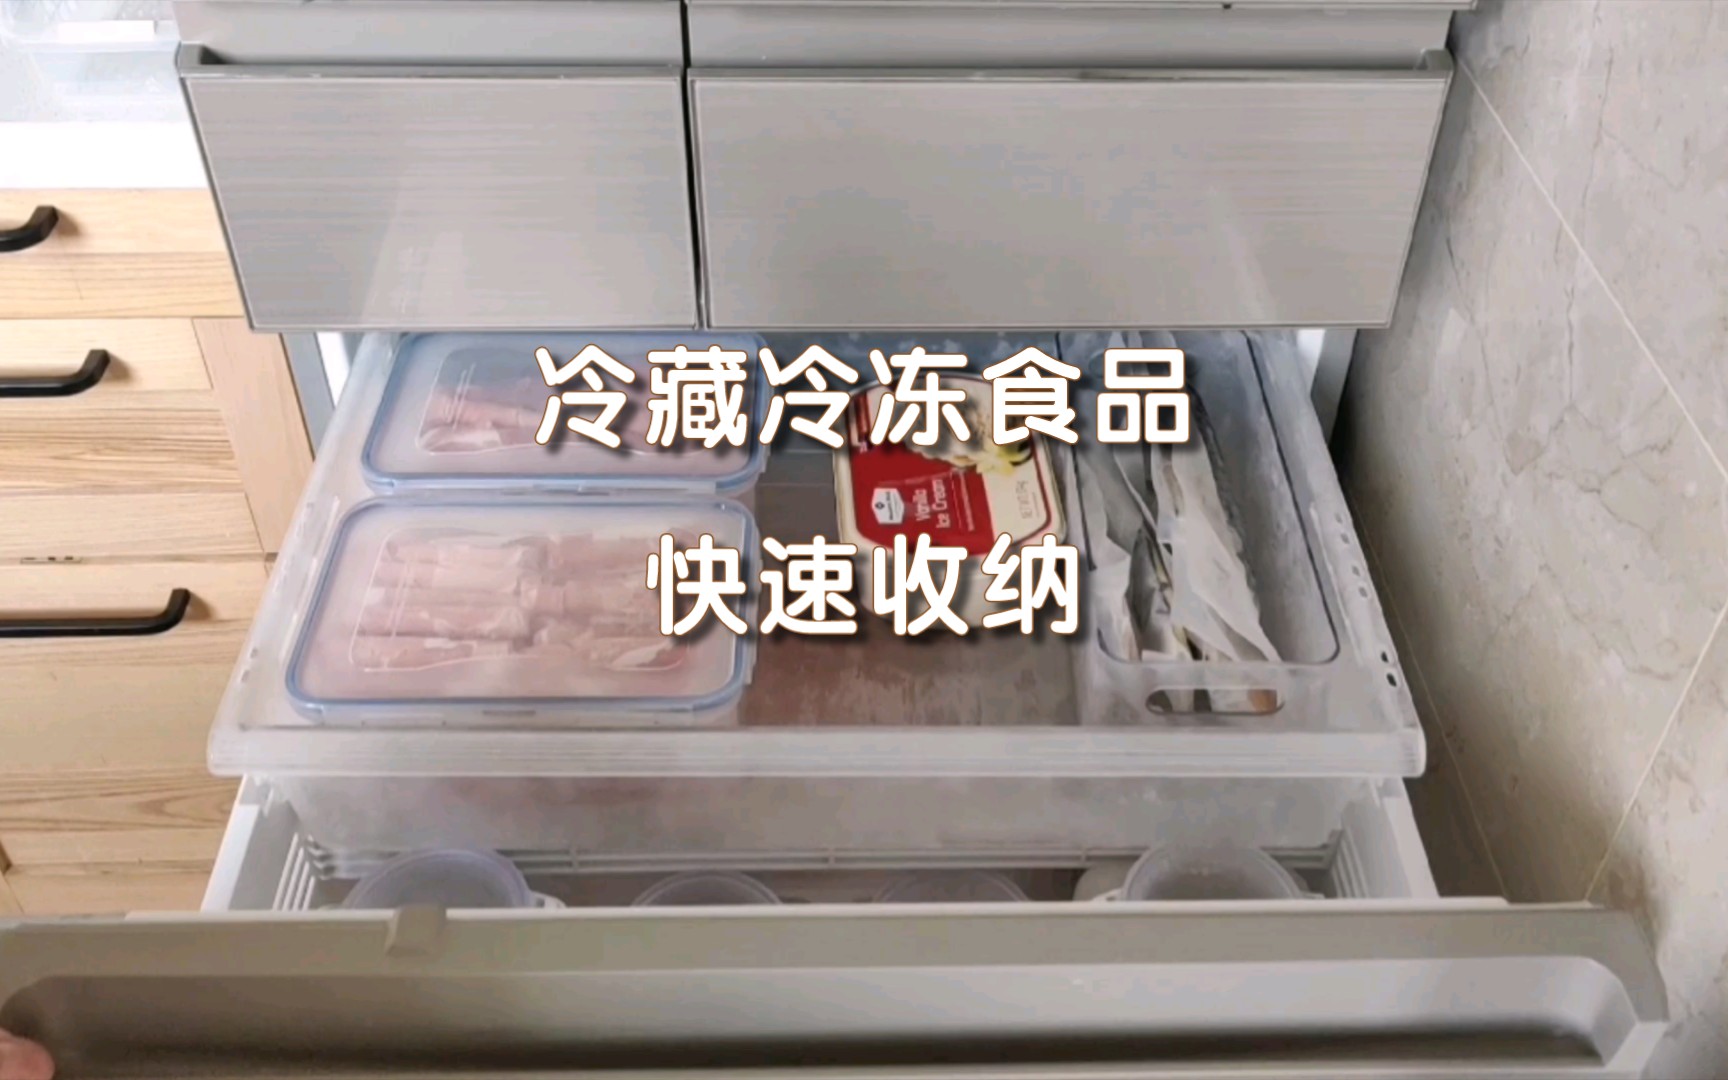 家庭冷藏冷冻食品快速整理沉浸式整理，冷藏冷冻食品我是这样收纳的👉去除不必要的外包装，更好地利用冰箱😄